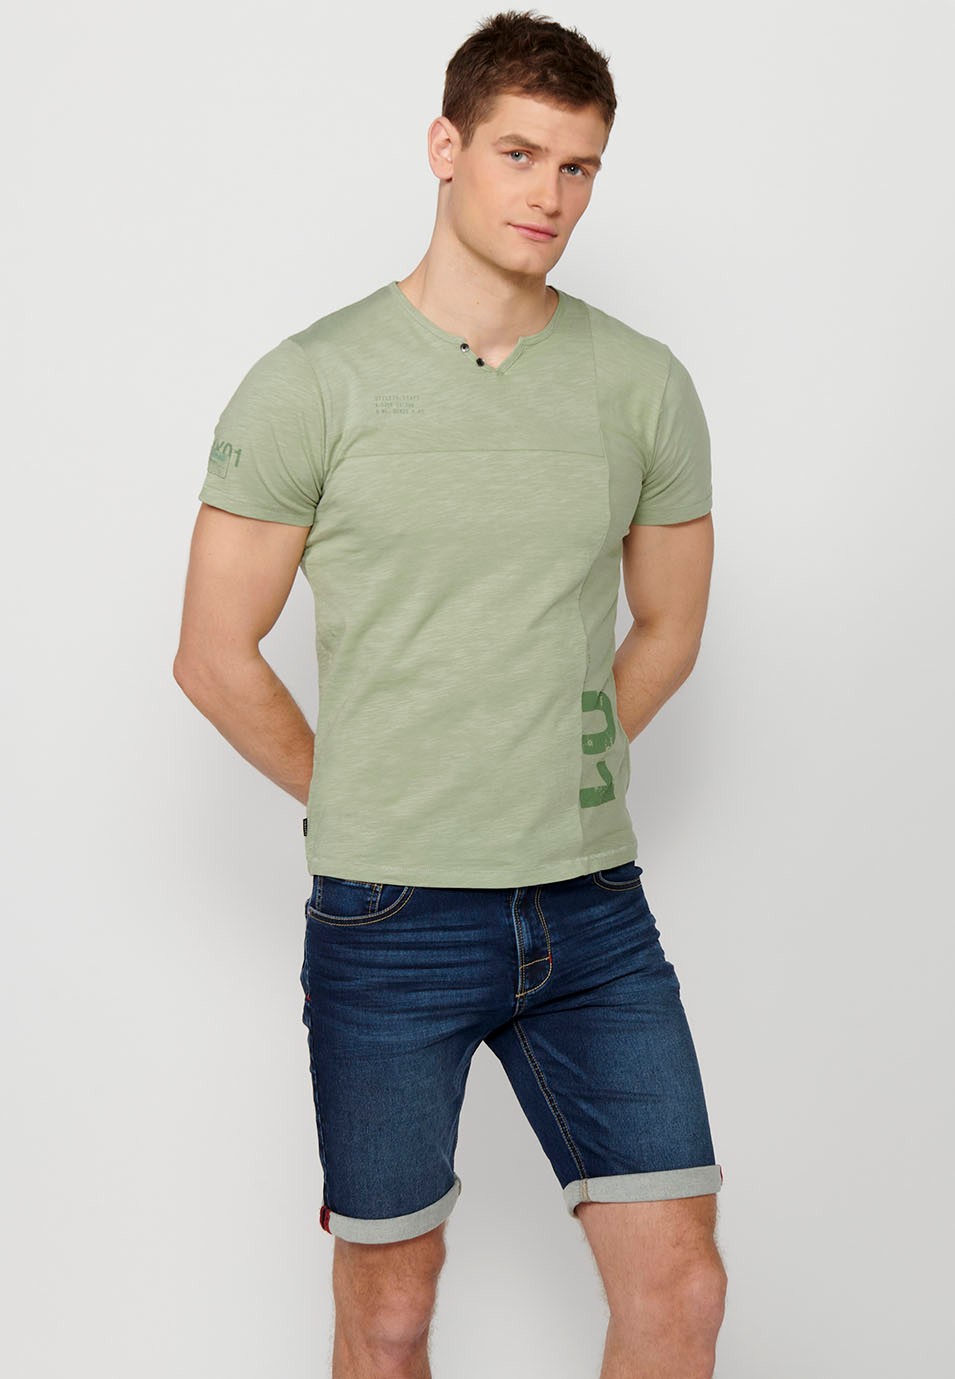 Camiseta de manga corta de algodon, cuello redondo con abertura con botón, color kaki para hombre